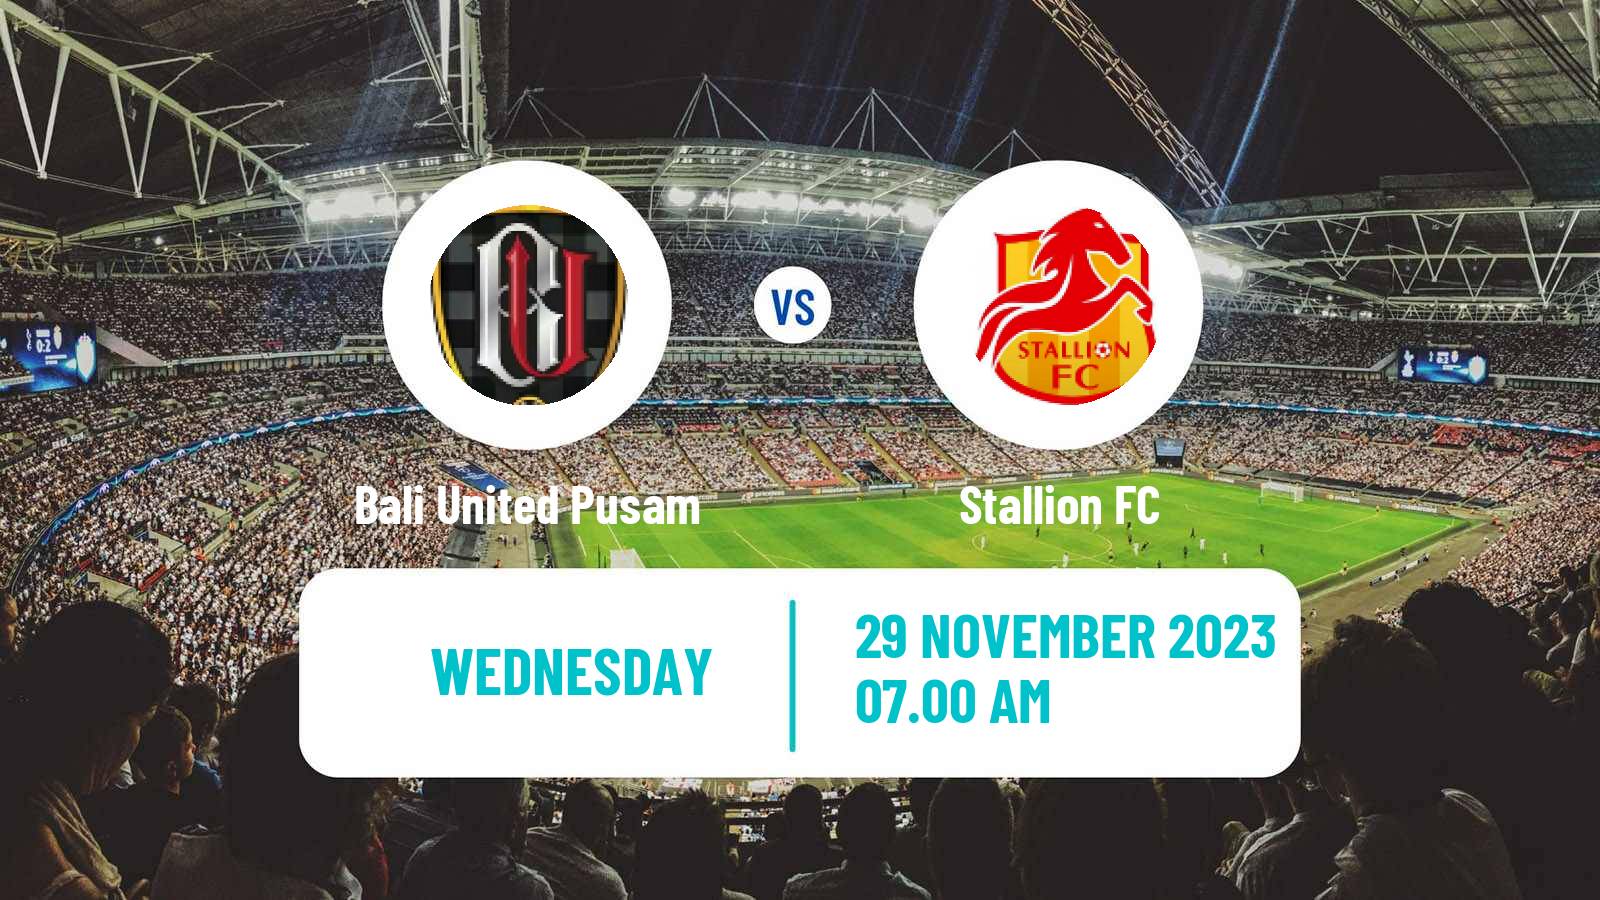 Soccer AFC Cup Bali United Pusam - Stallion